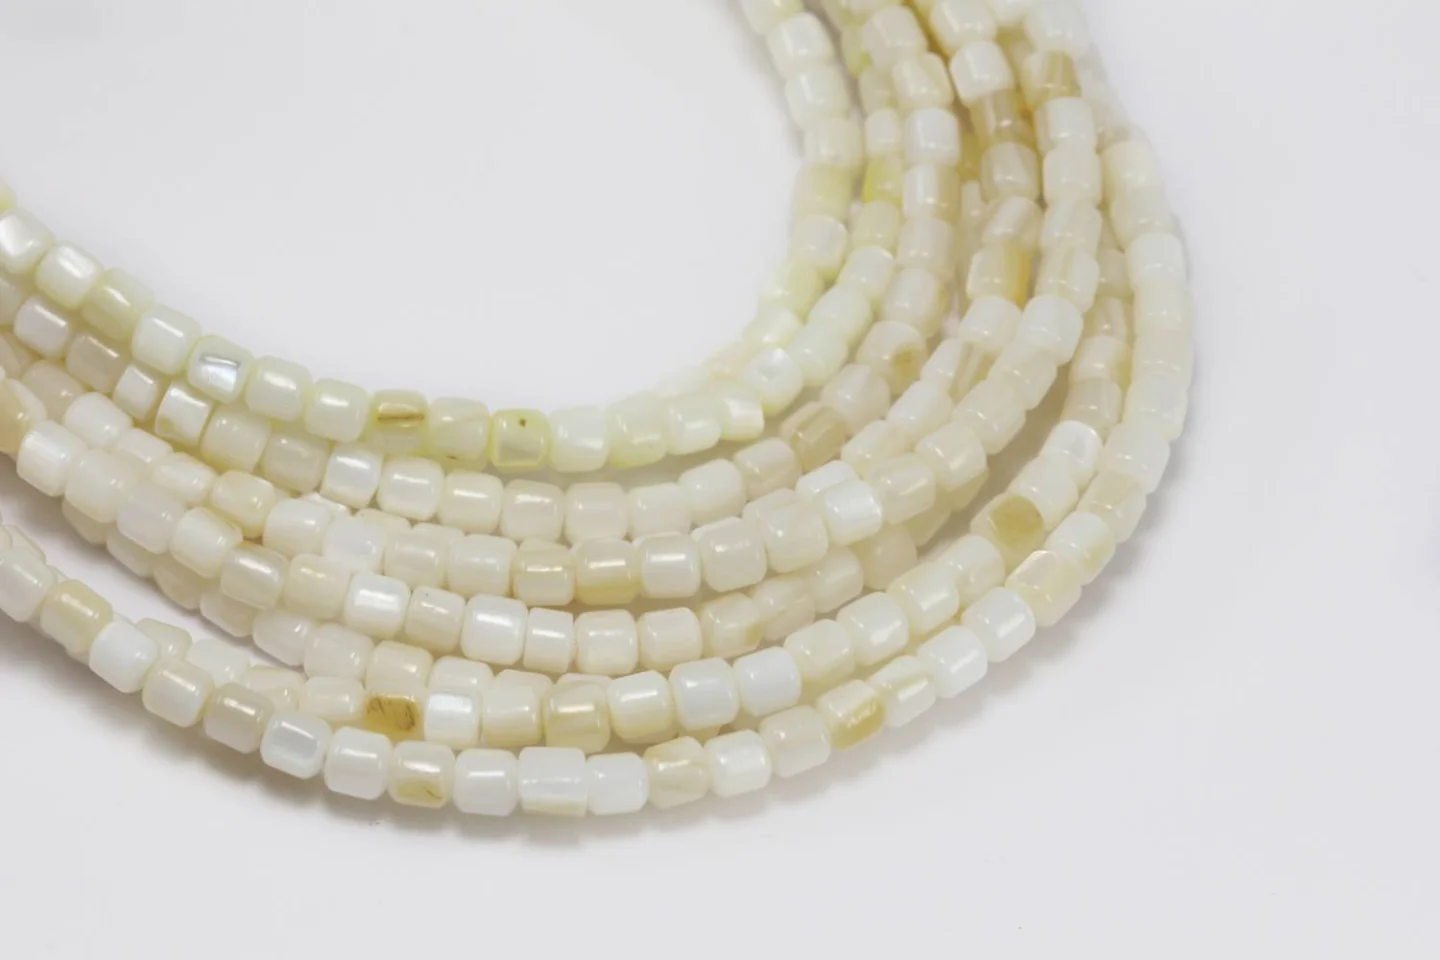 3mm-barrel-white-shell-beads.